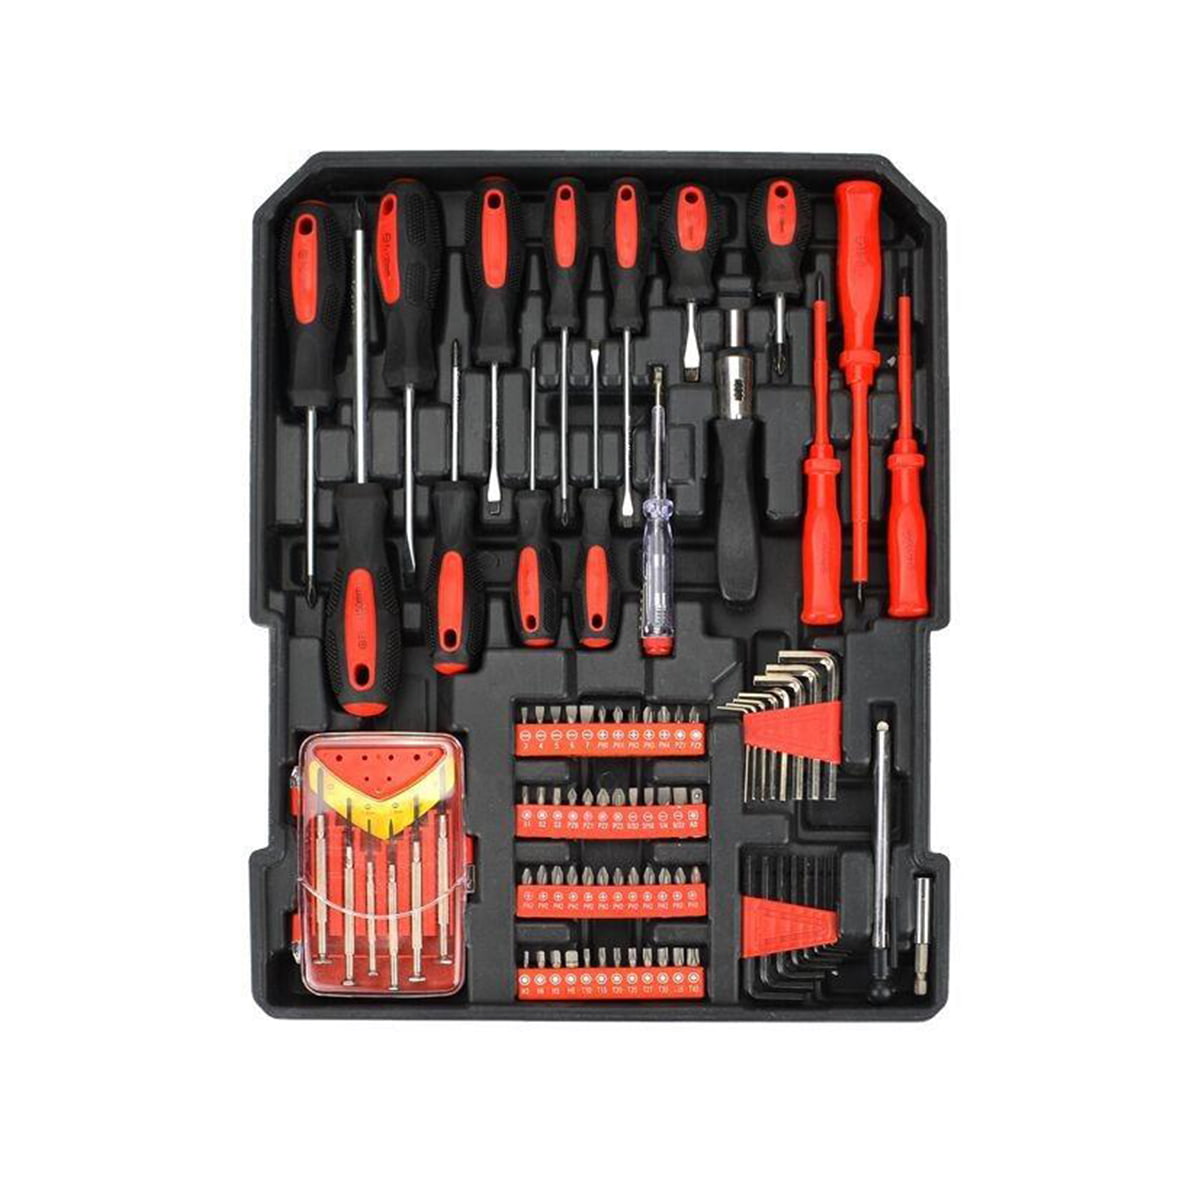 499 ชิ้น Ferramentas Professional Hardware Automotive Tool Socket Kit de Reparao de Automobile Tools Set